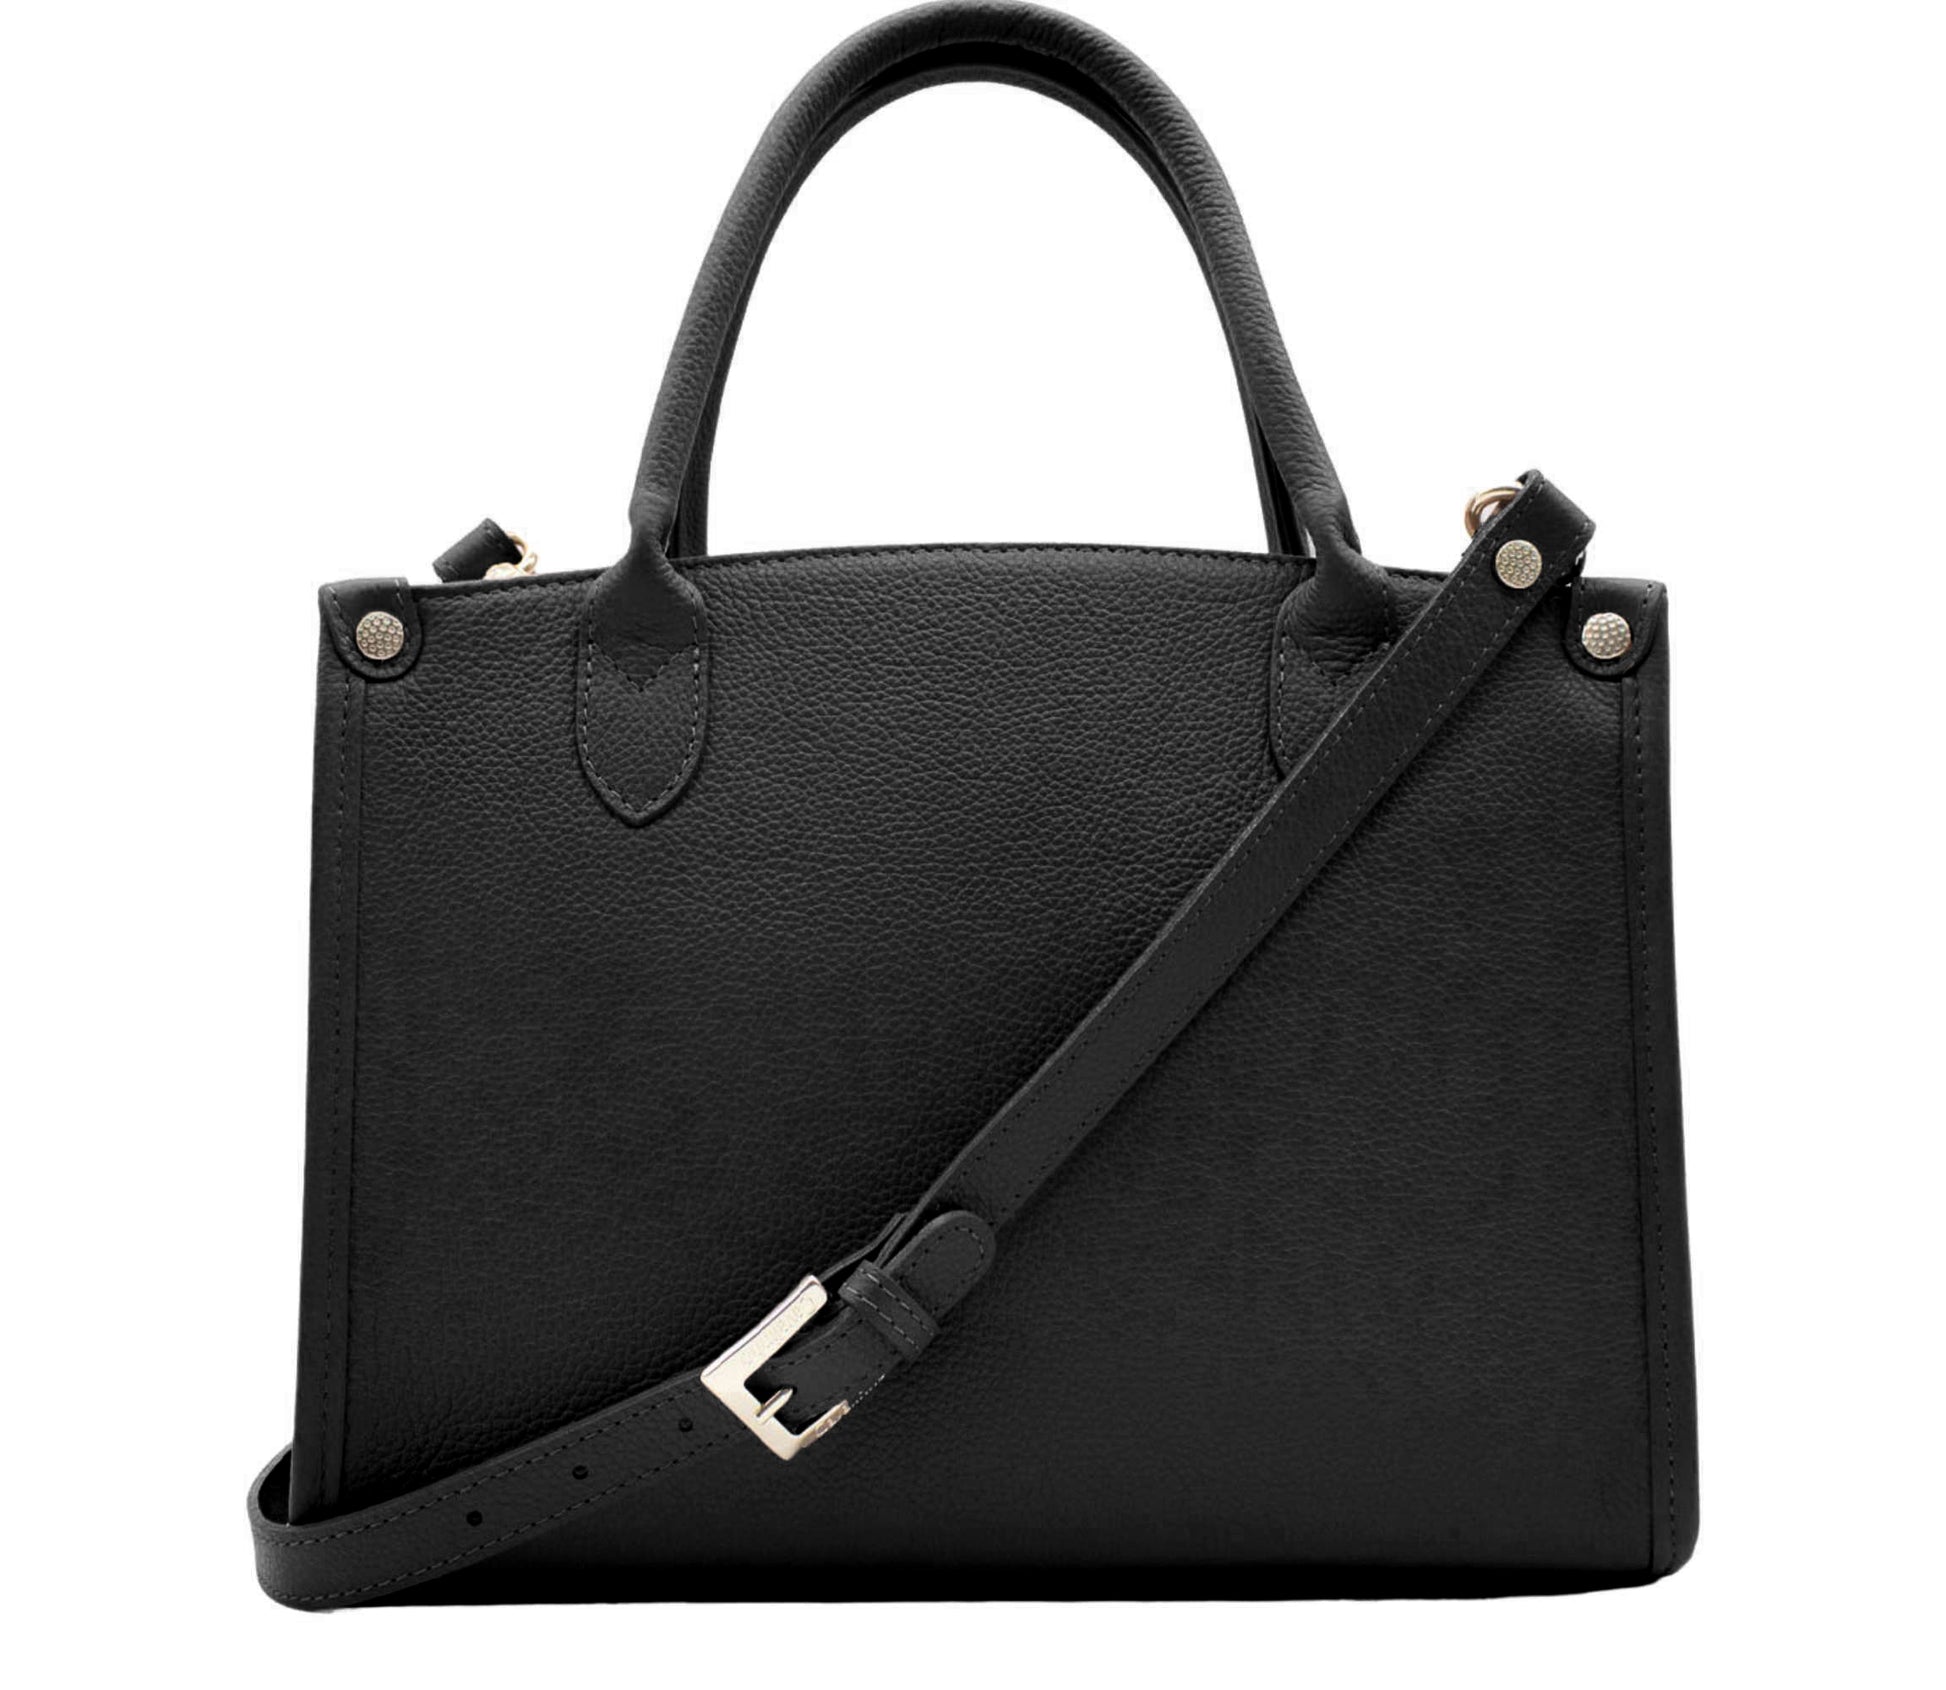 Cavalinho Muse Leather Handbag - CornflowerBlue - 18300480.01.99_3